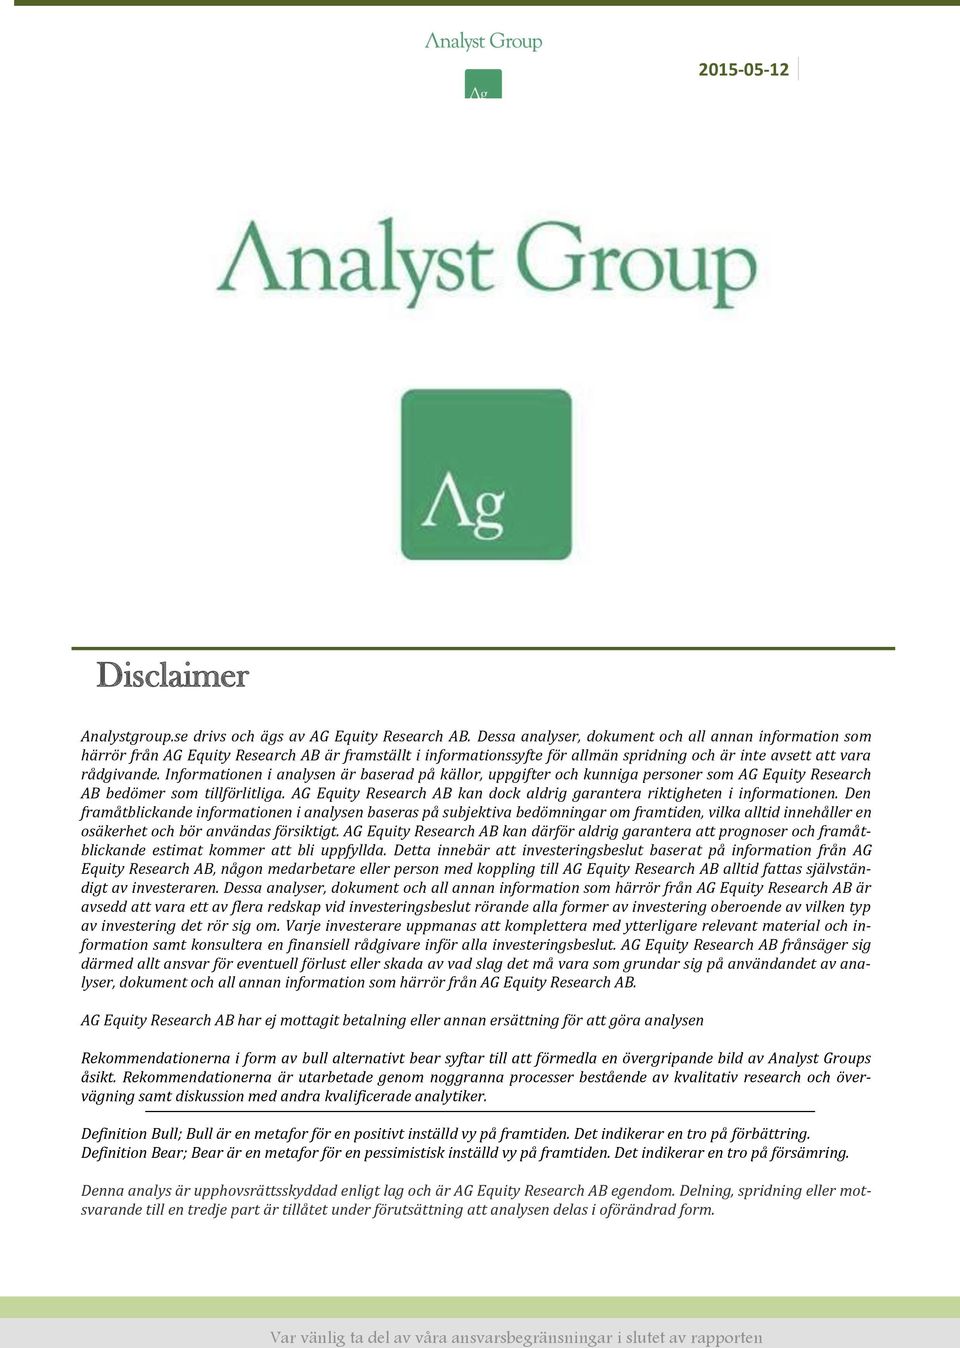 Informationen i analysen är baserad på källor, uppgifter och kunniga personer som AG Equity Research AB bedömer som tillförlitliga.